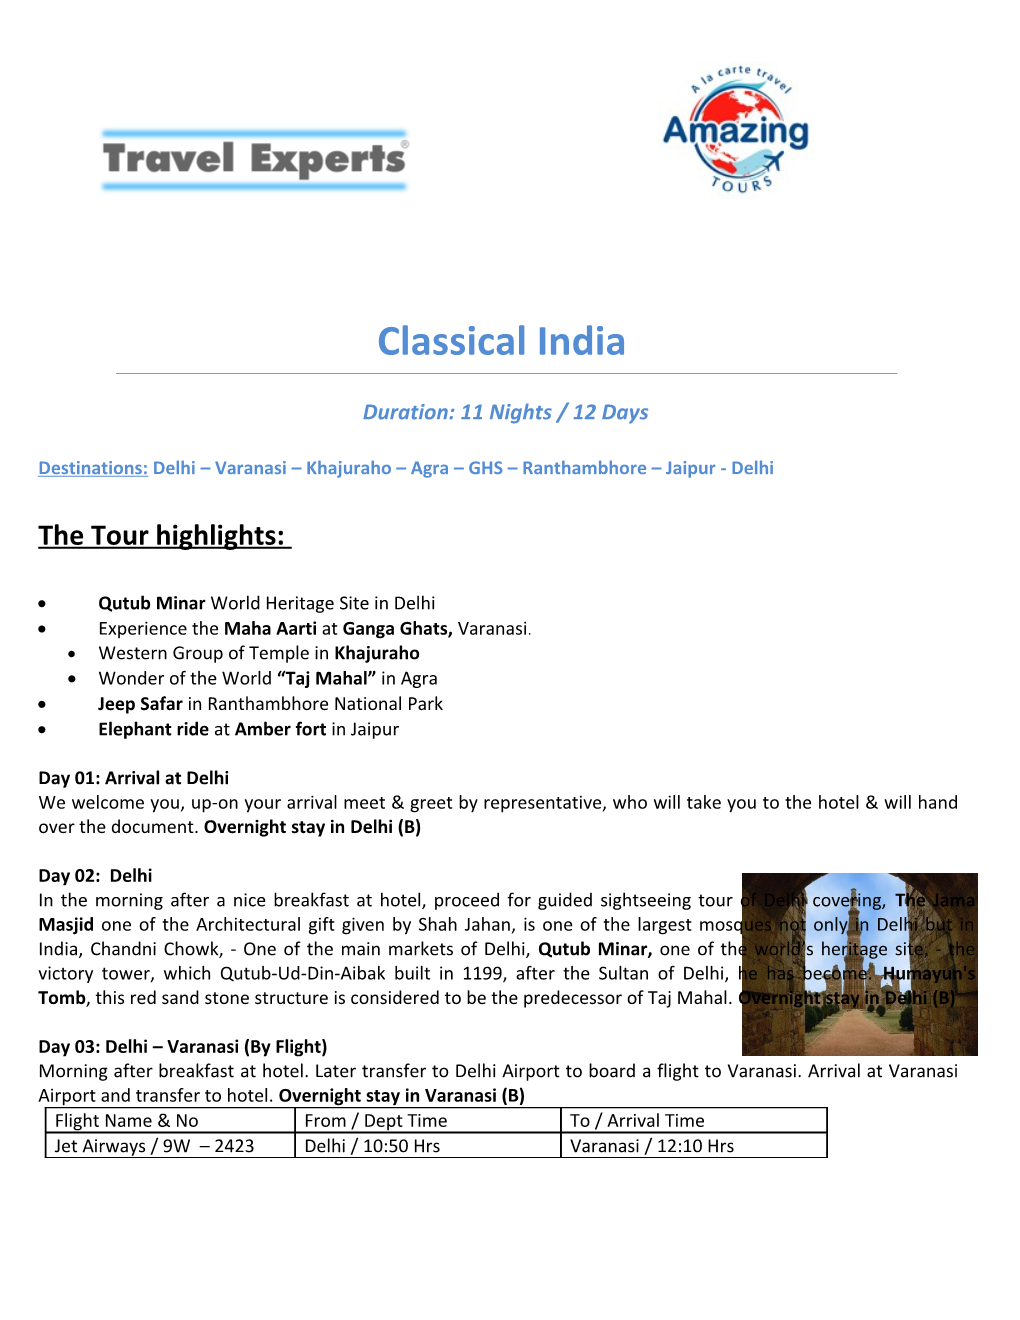 Destinations: Delhi Varanasi Khajuraho Agra GHS Ranthambhore Jaipur - Delhi